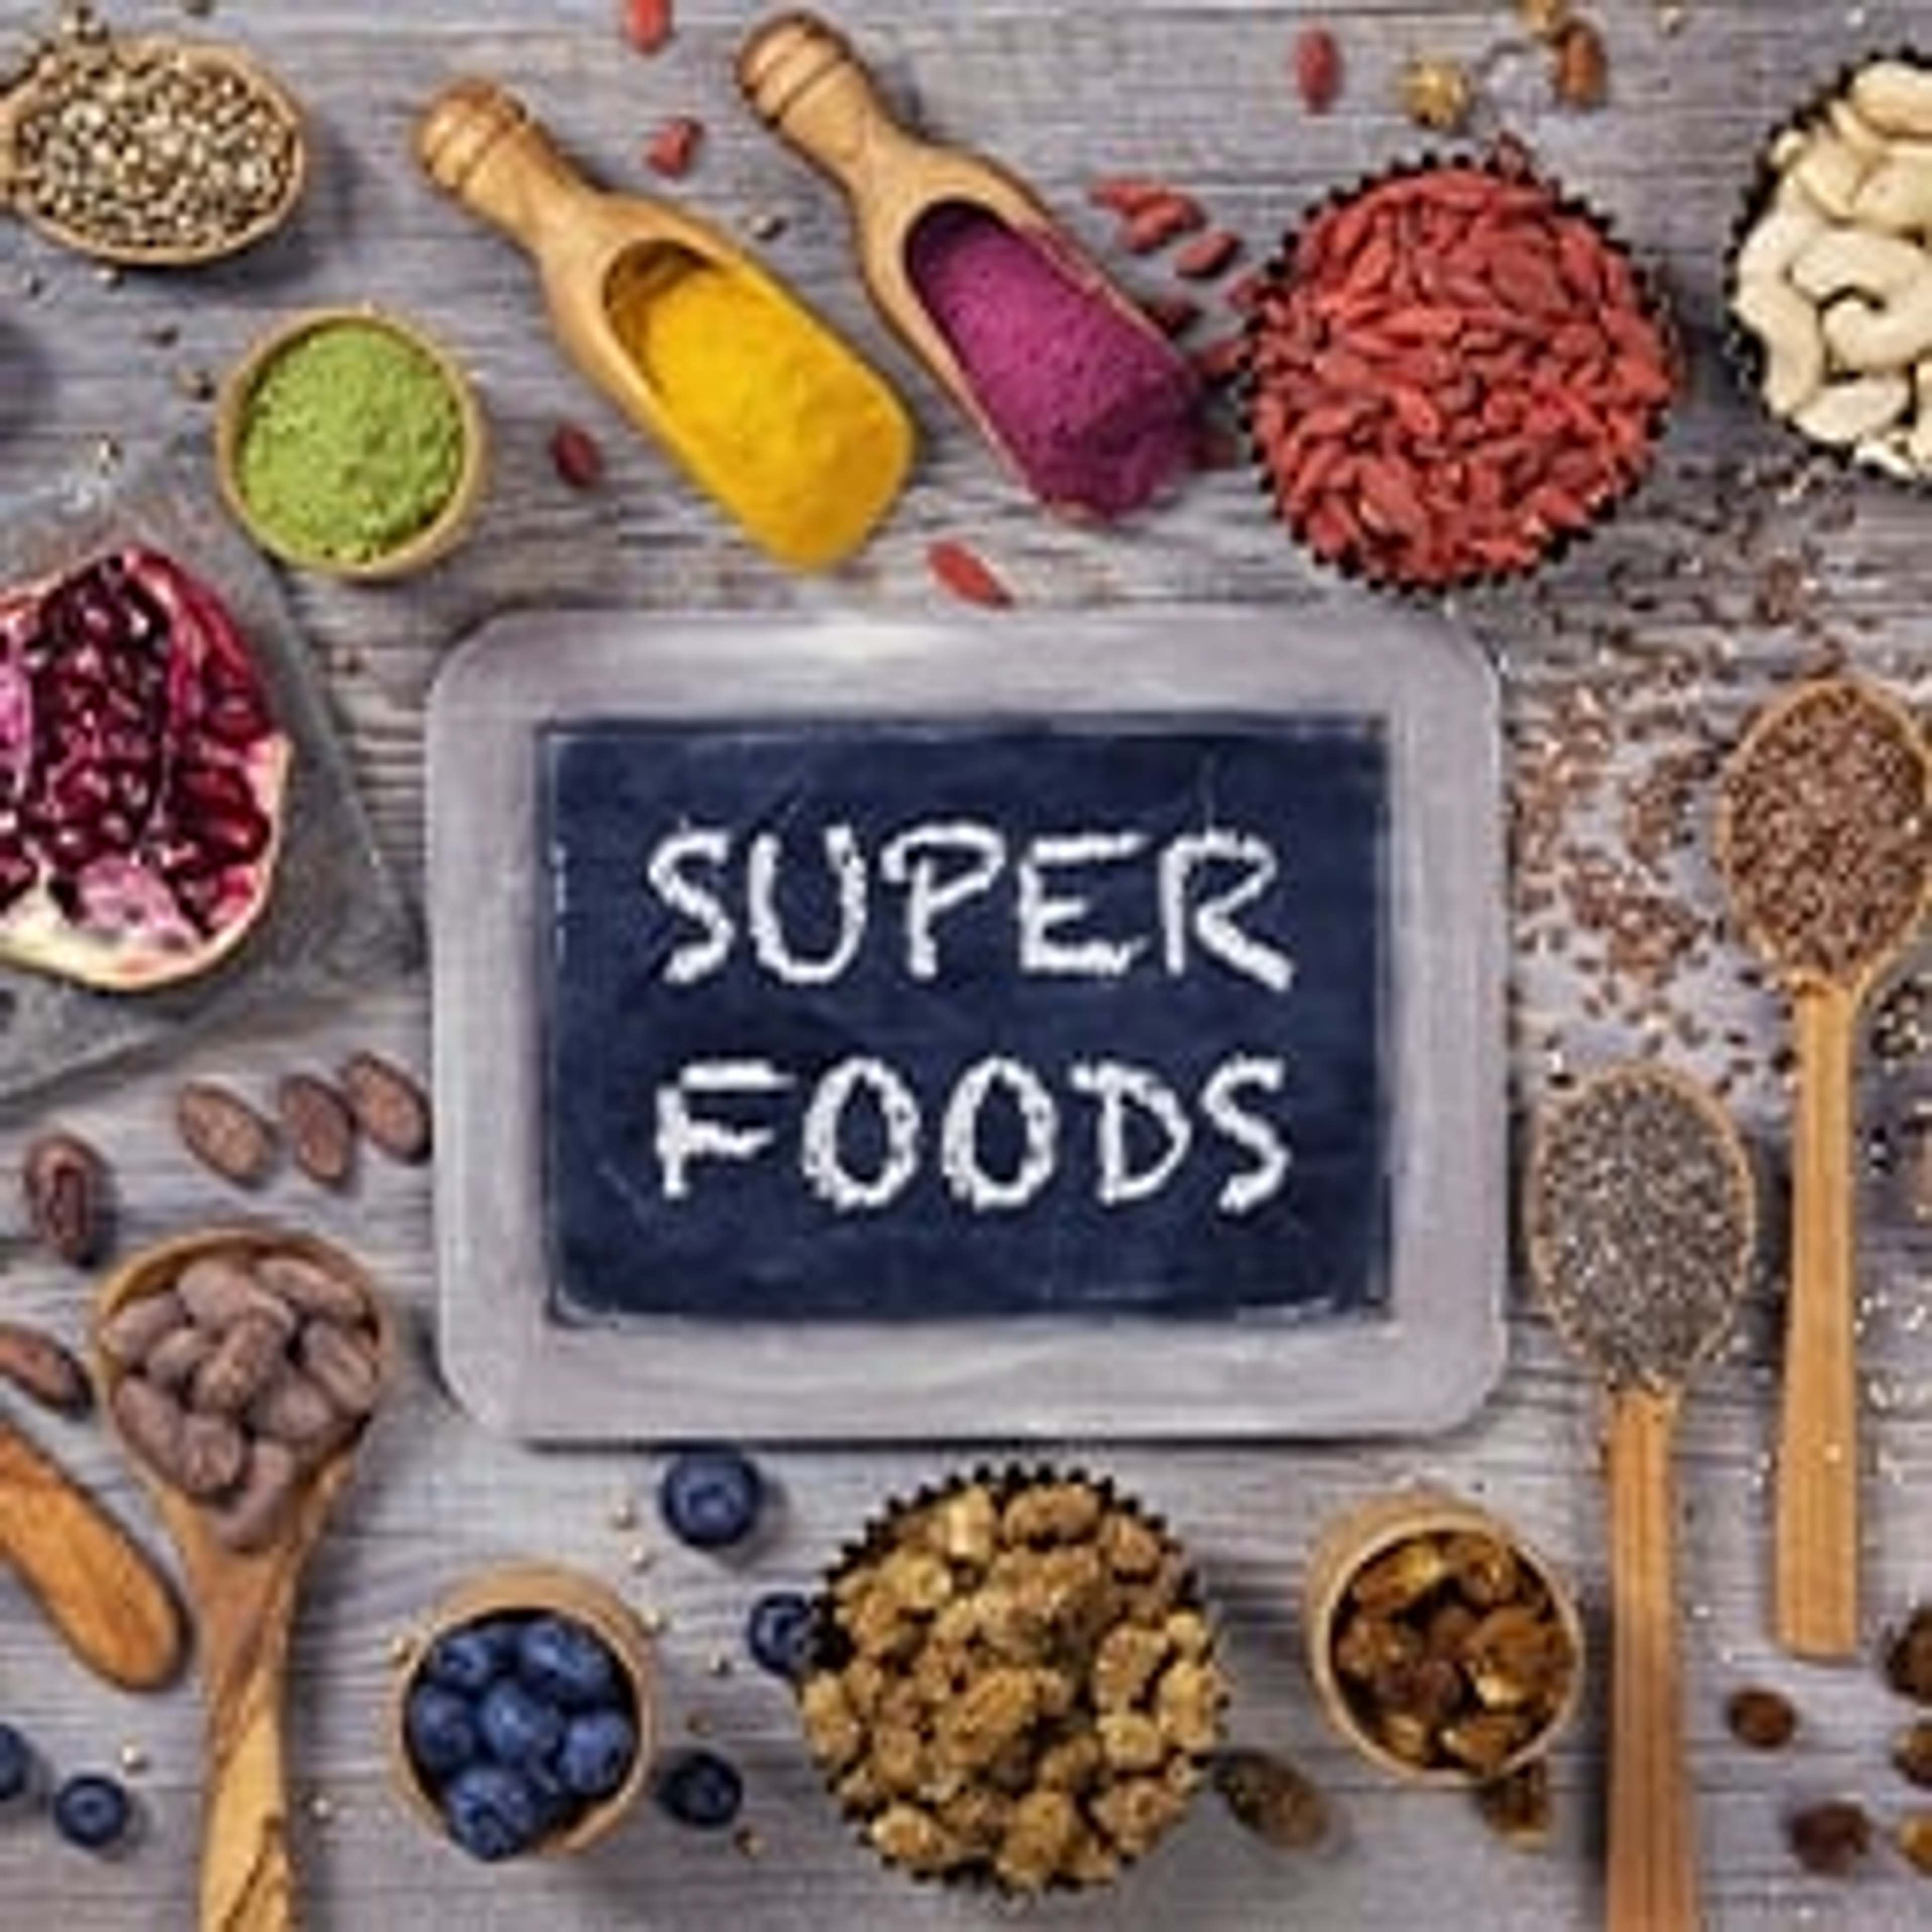 Superfoods können die Gesundheit fördern, da sie reich an Pflanzenwirkstoffen, Vitaminen, Mineralien und Antioxidatien sind.